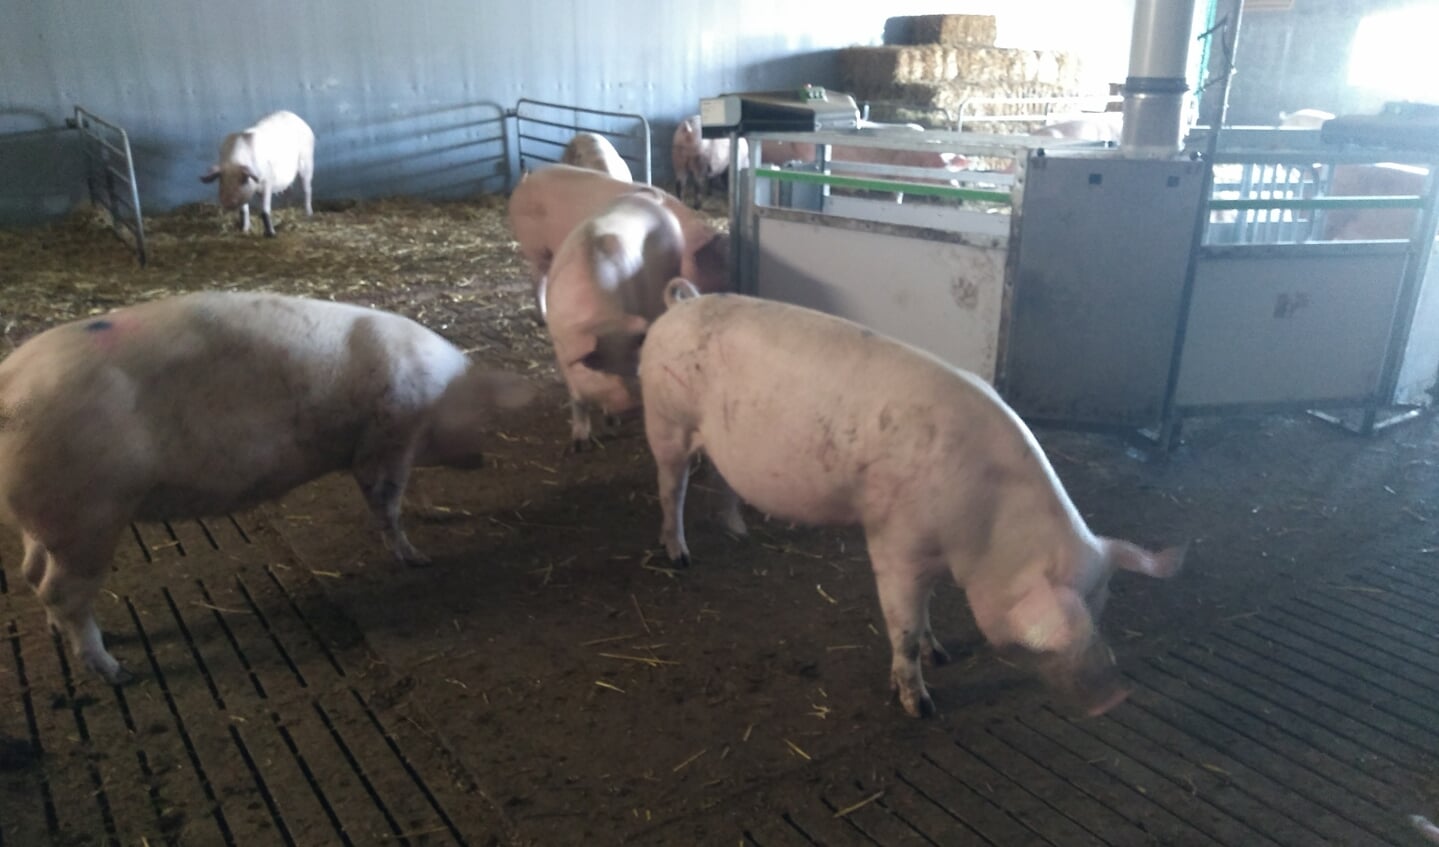 De varkens krijgen ruim twee keer zoveel ruimte